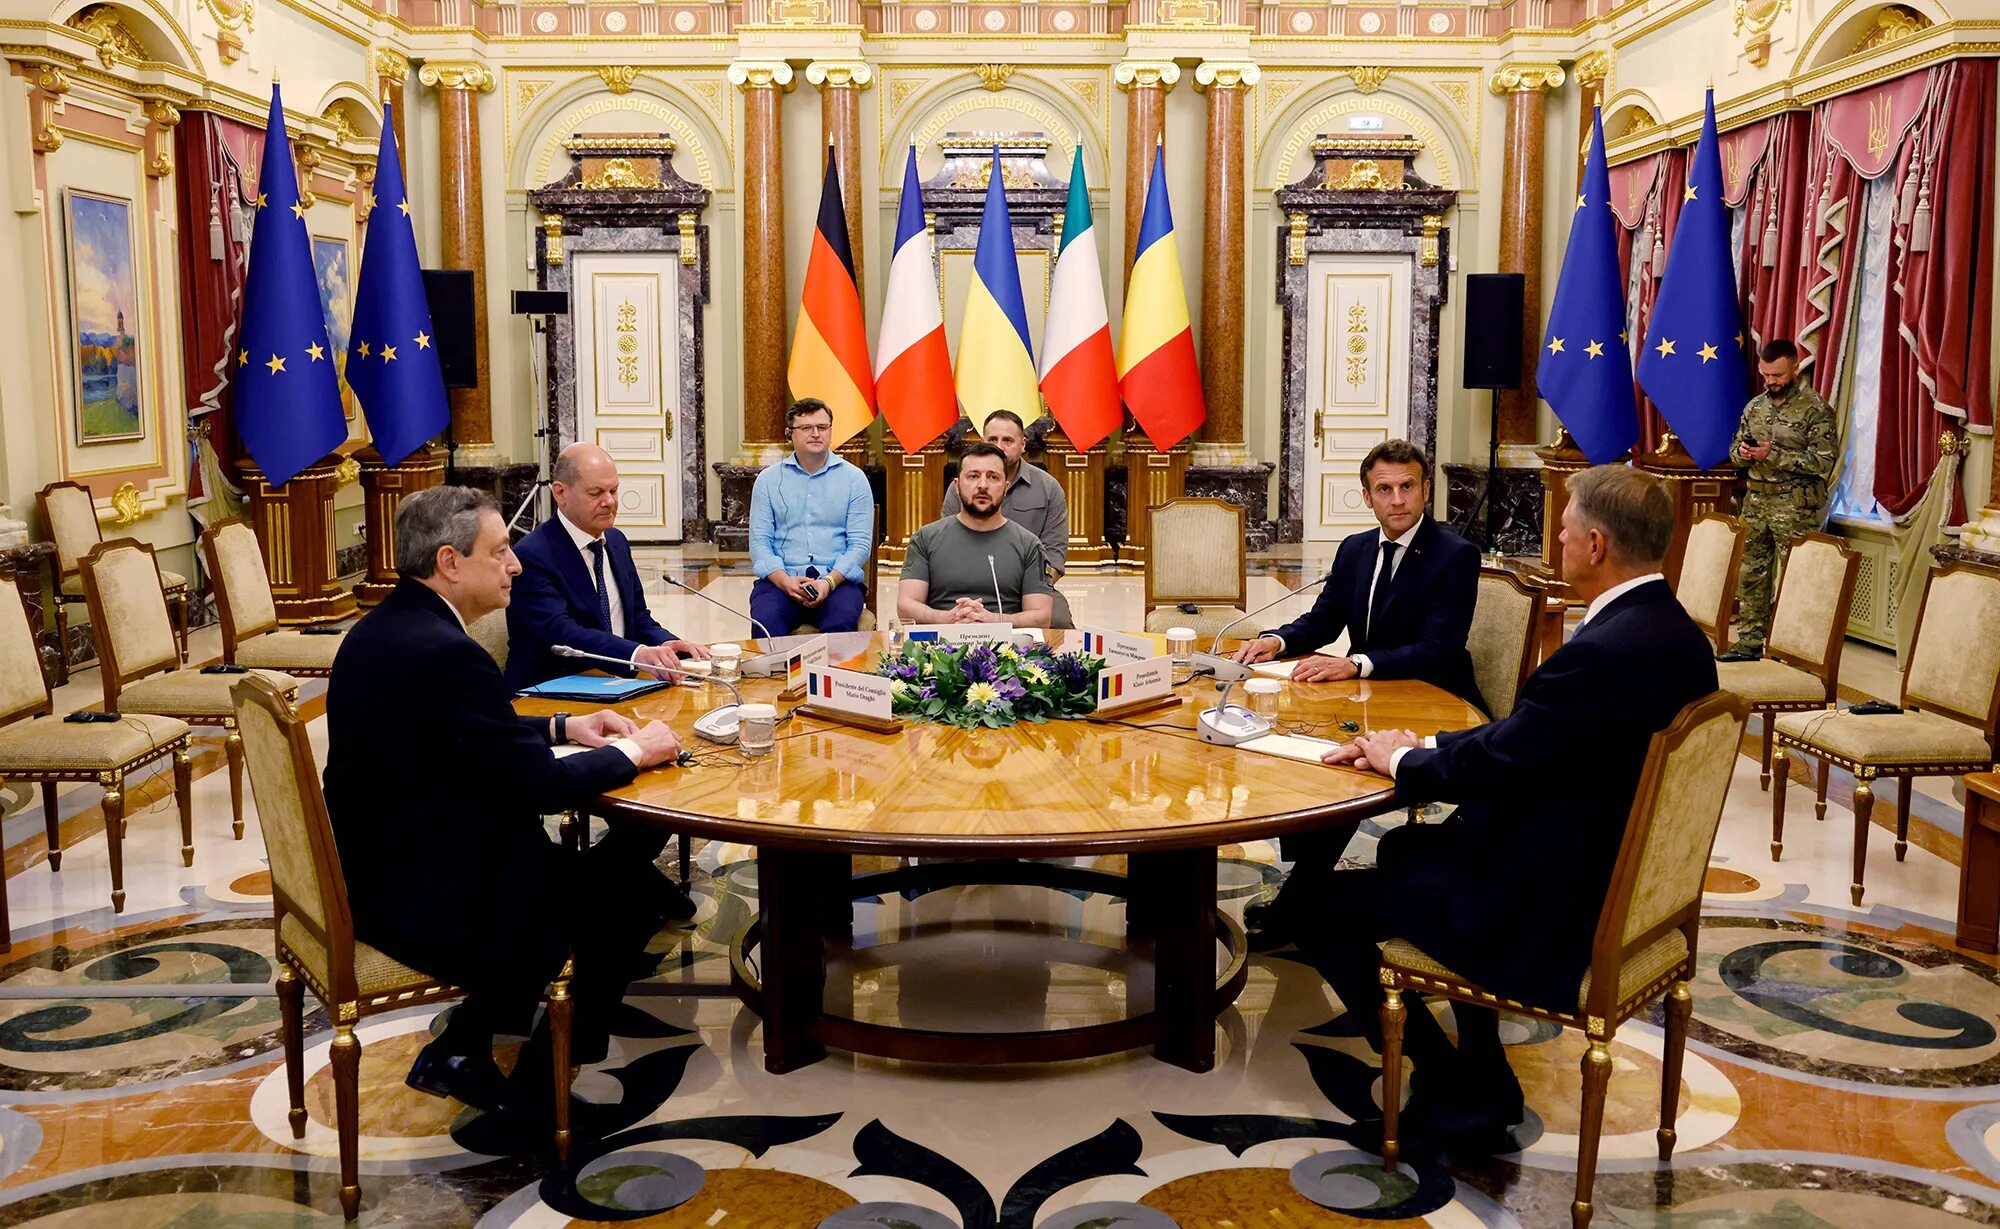 Драги премьер министр Италии. Кабинет президента Украины.